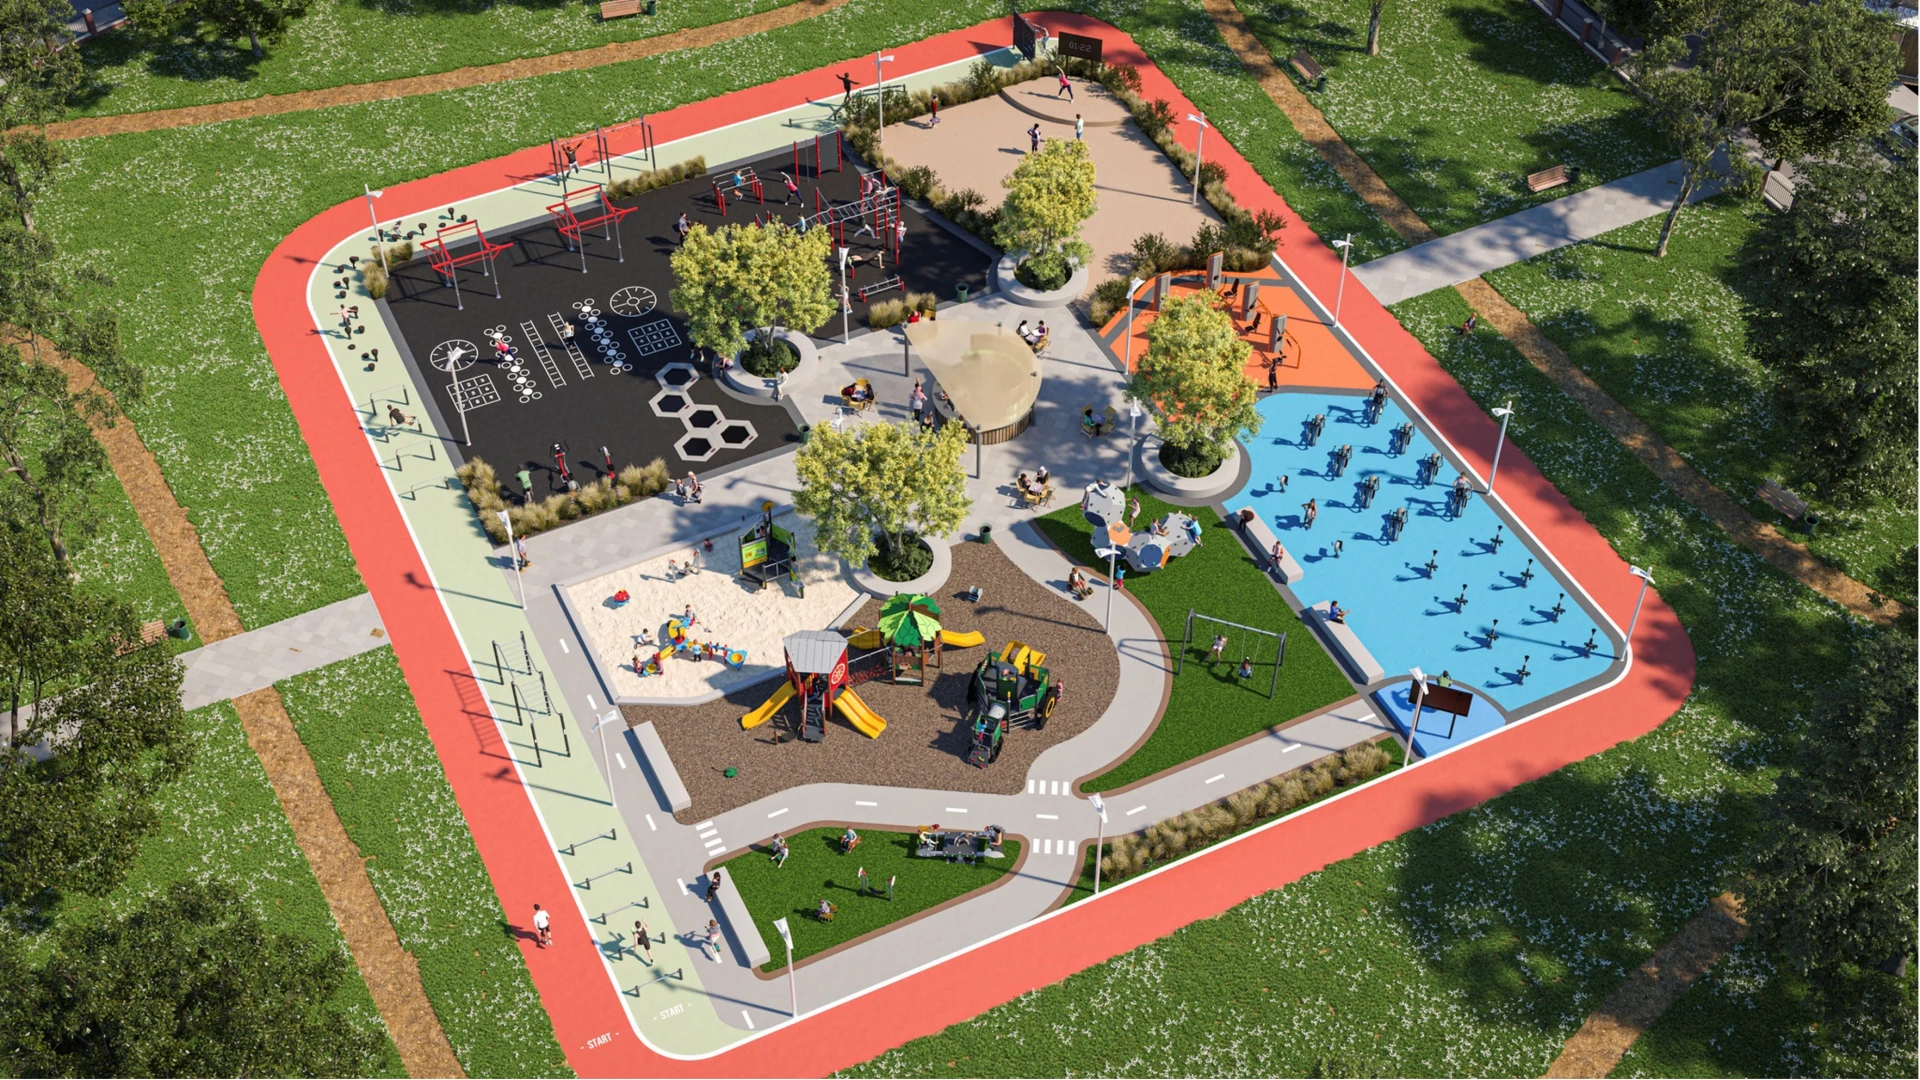 Vue aérienne d'une aire de jeux et d'un site de fitness en plein air dans un parc.